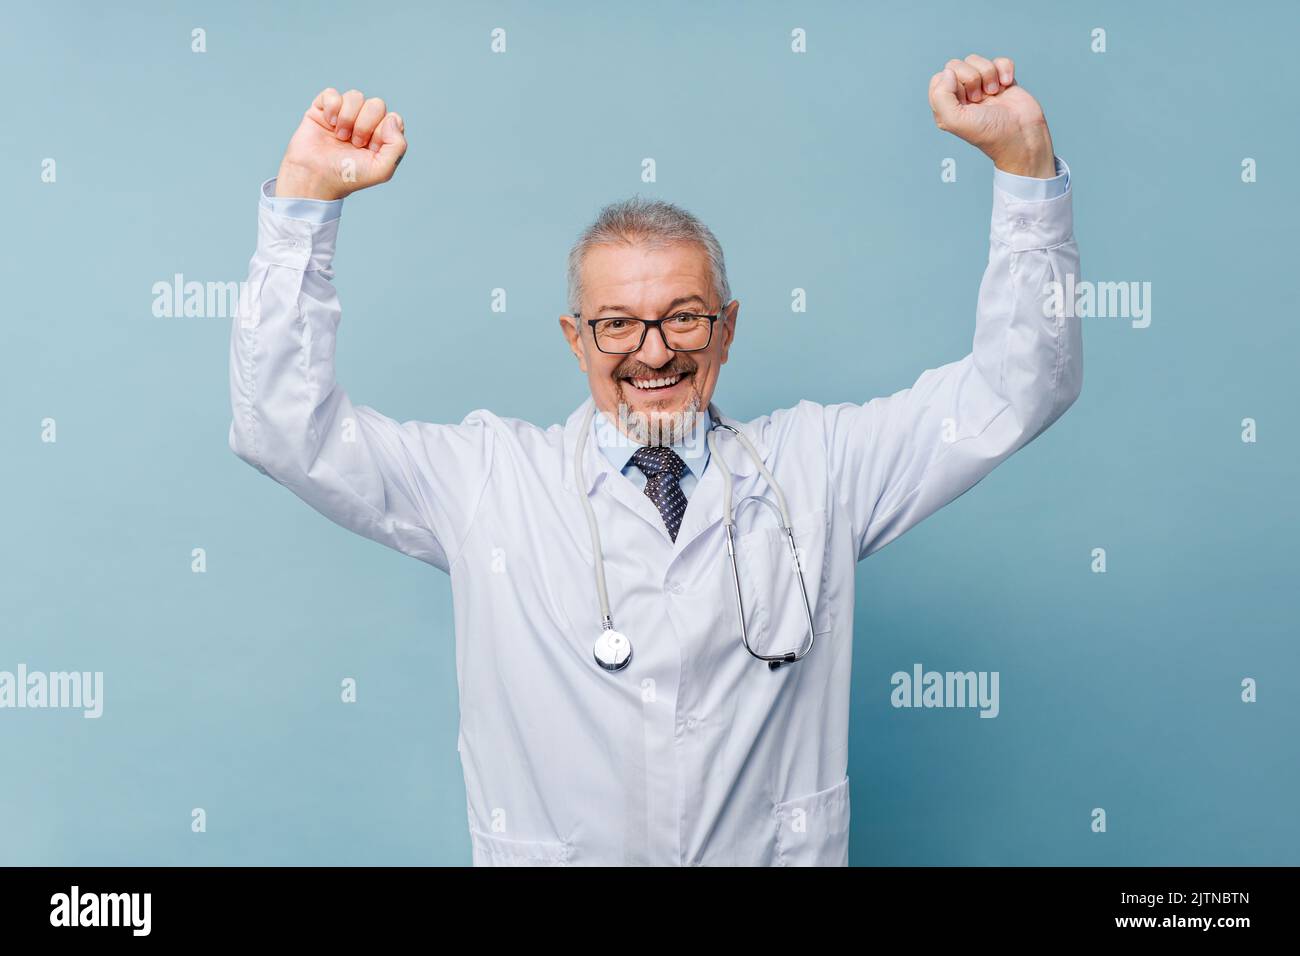 Ein Arzt hob ihre Arme zum Sieg. Konzept der Medizin und Kampf gegen Krankheit. Stockfoto